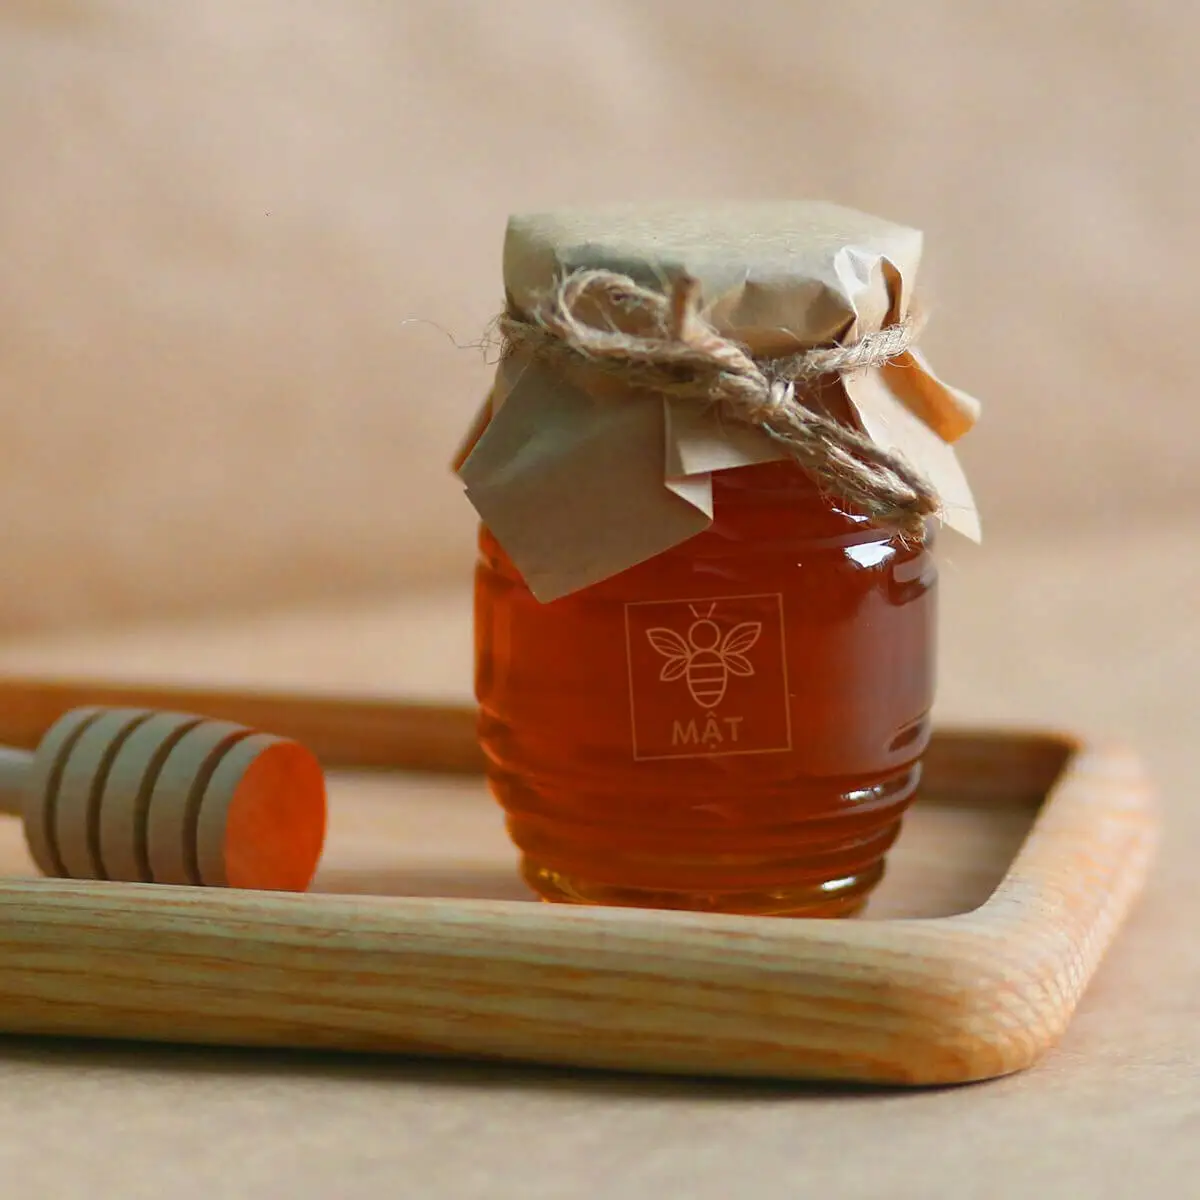 Premium Kwaliteit Beste Prijs Groothandel Bulk Thai Honing/Natuurlijke Honing